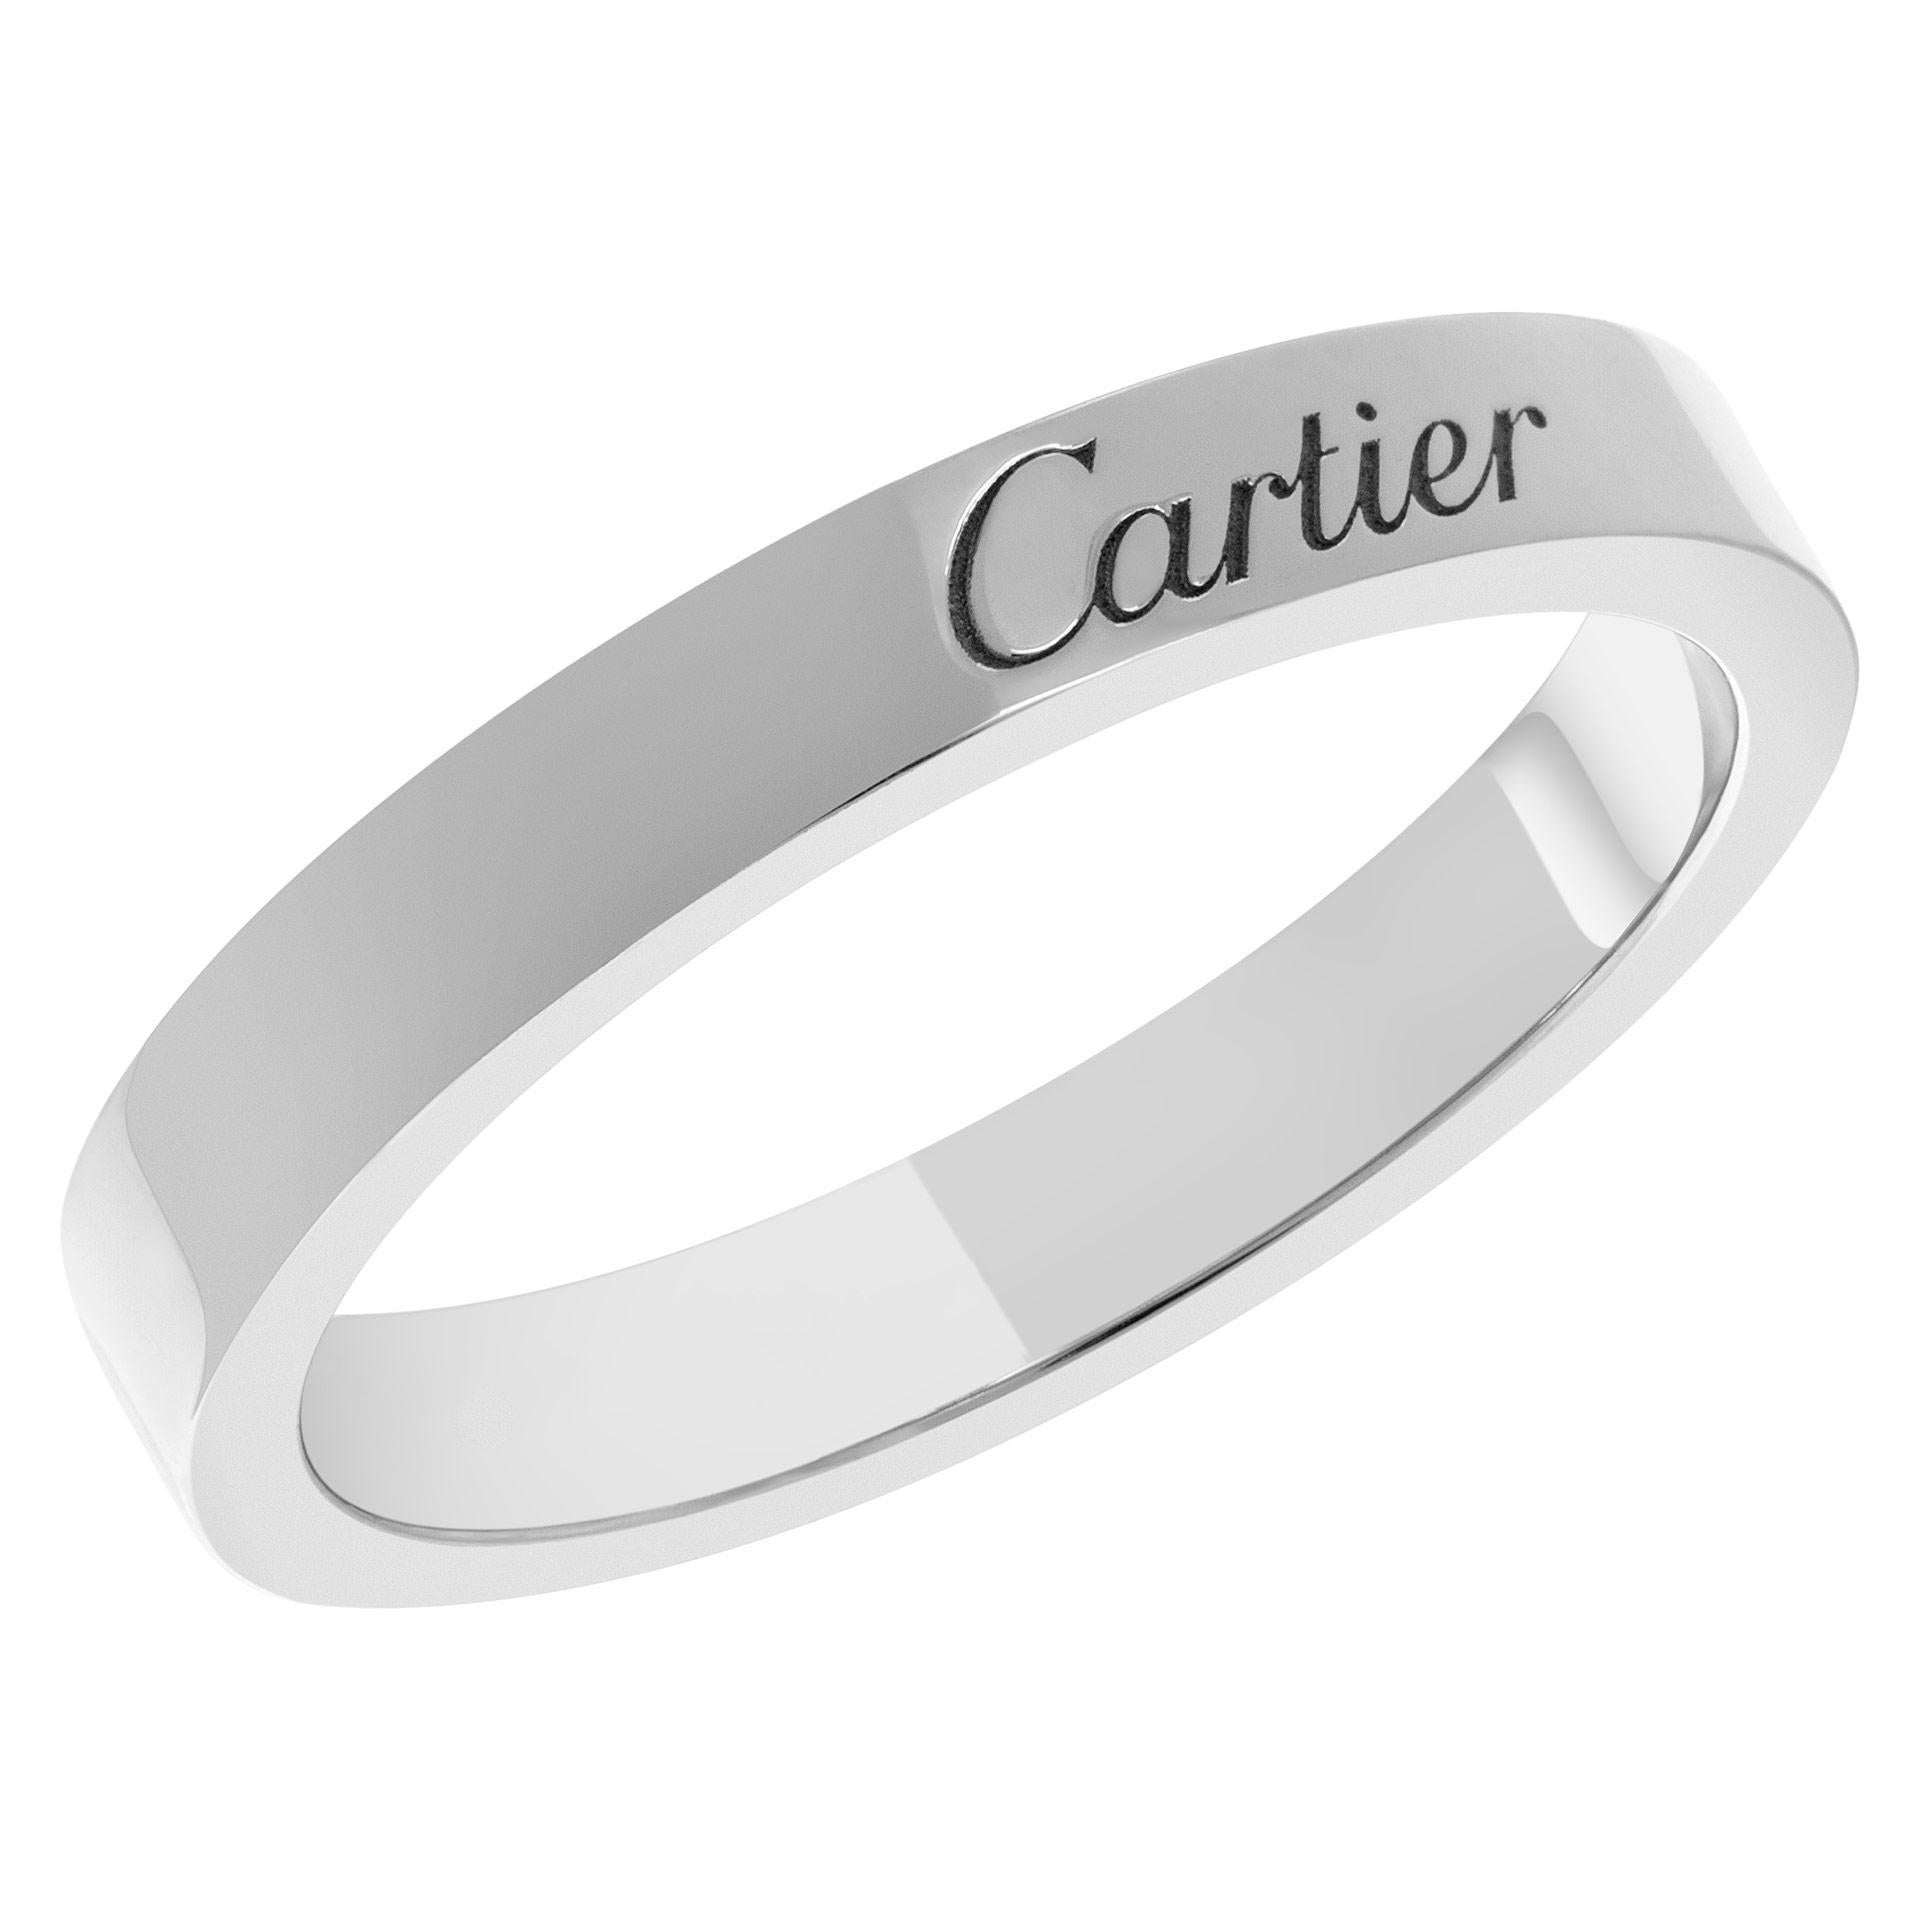 C De Cartier Ehering aus Platin. Breite: 3 mm. Mit Box. REF: B4054000. Größe 53

Dieser Cartier Ring ist derzeit Größe 6,25 und einige Elemente können Größe nach oben oder unten, fragen Sie bitte! Er wiegt 3.3 Pennygewichte und ist aus Platin.